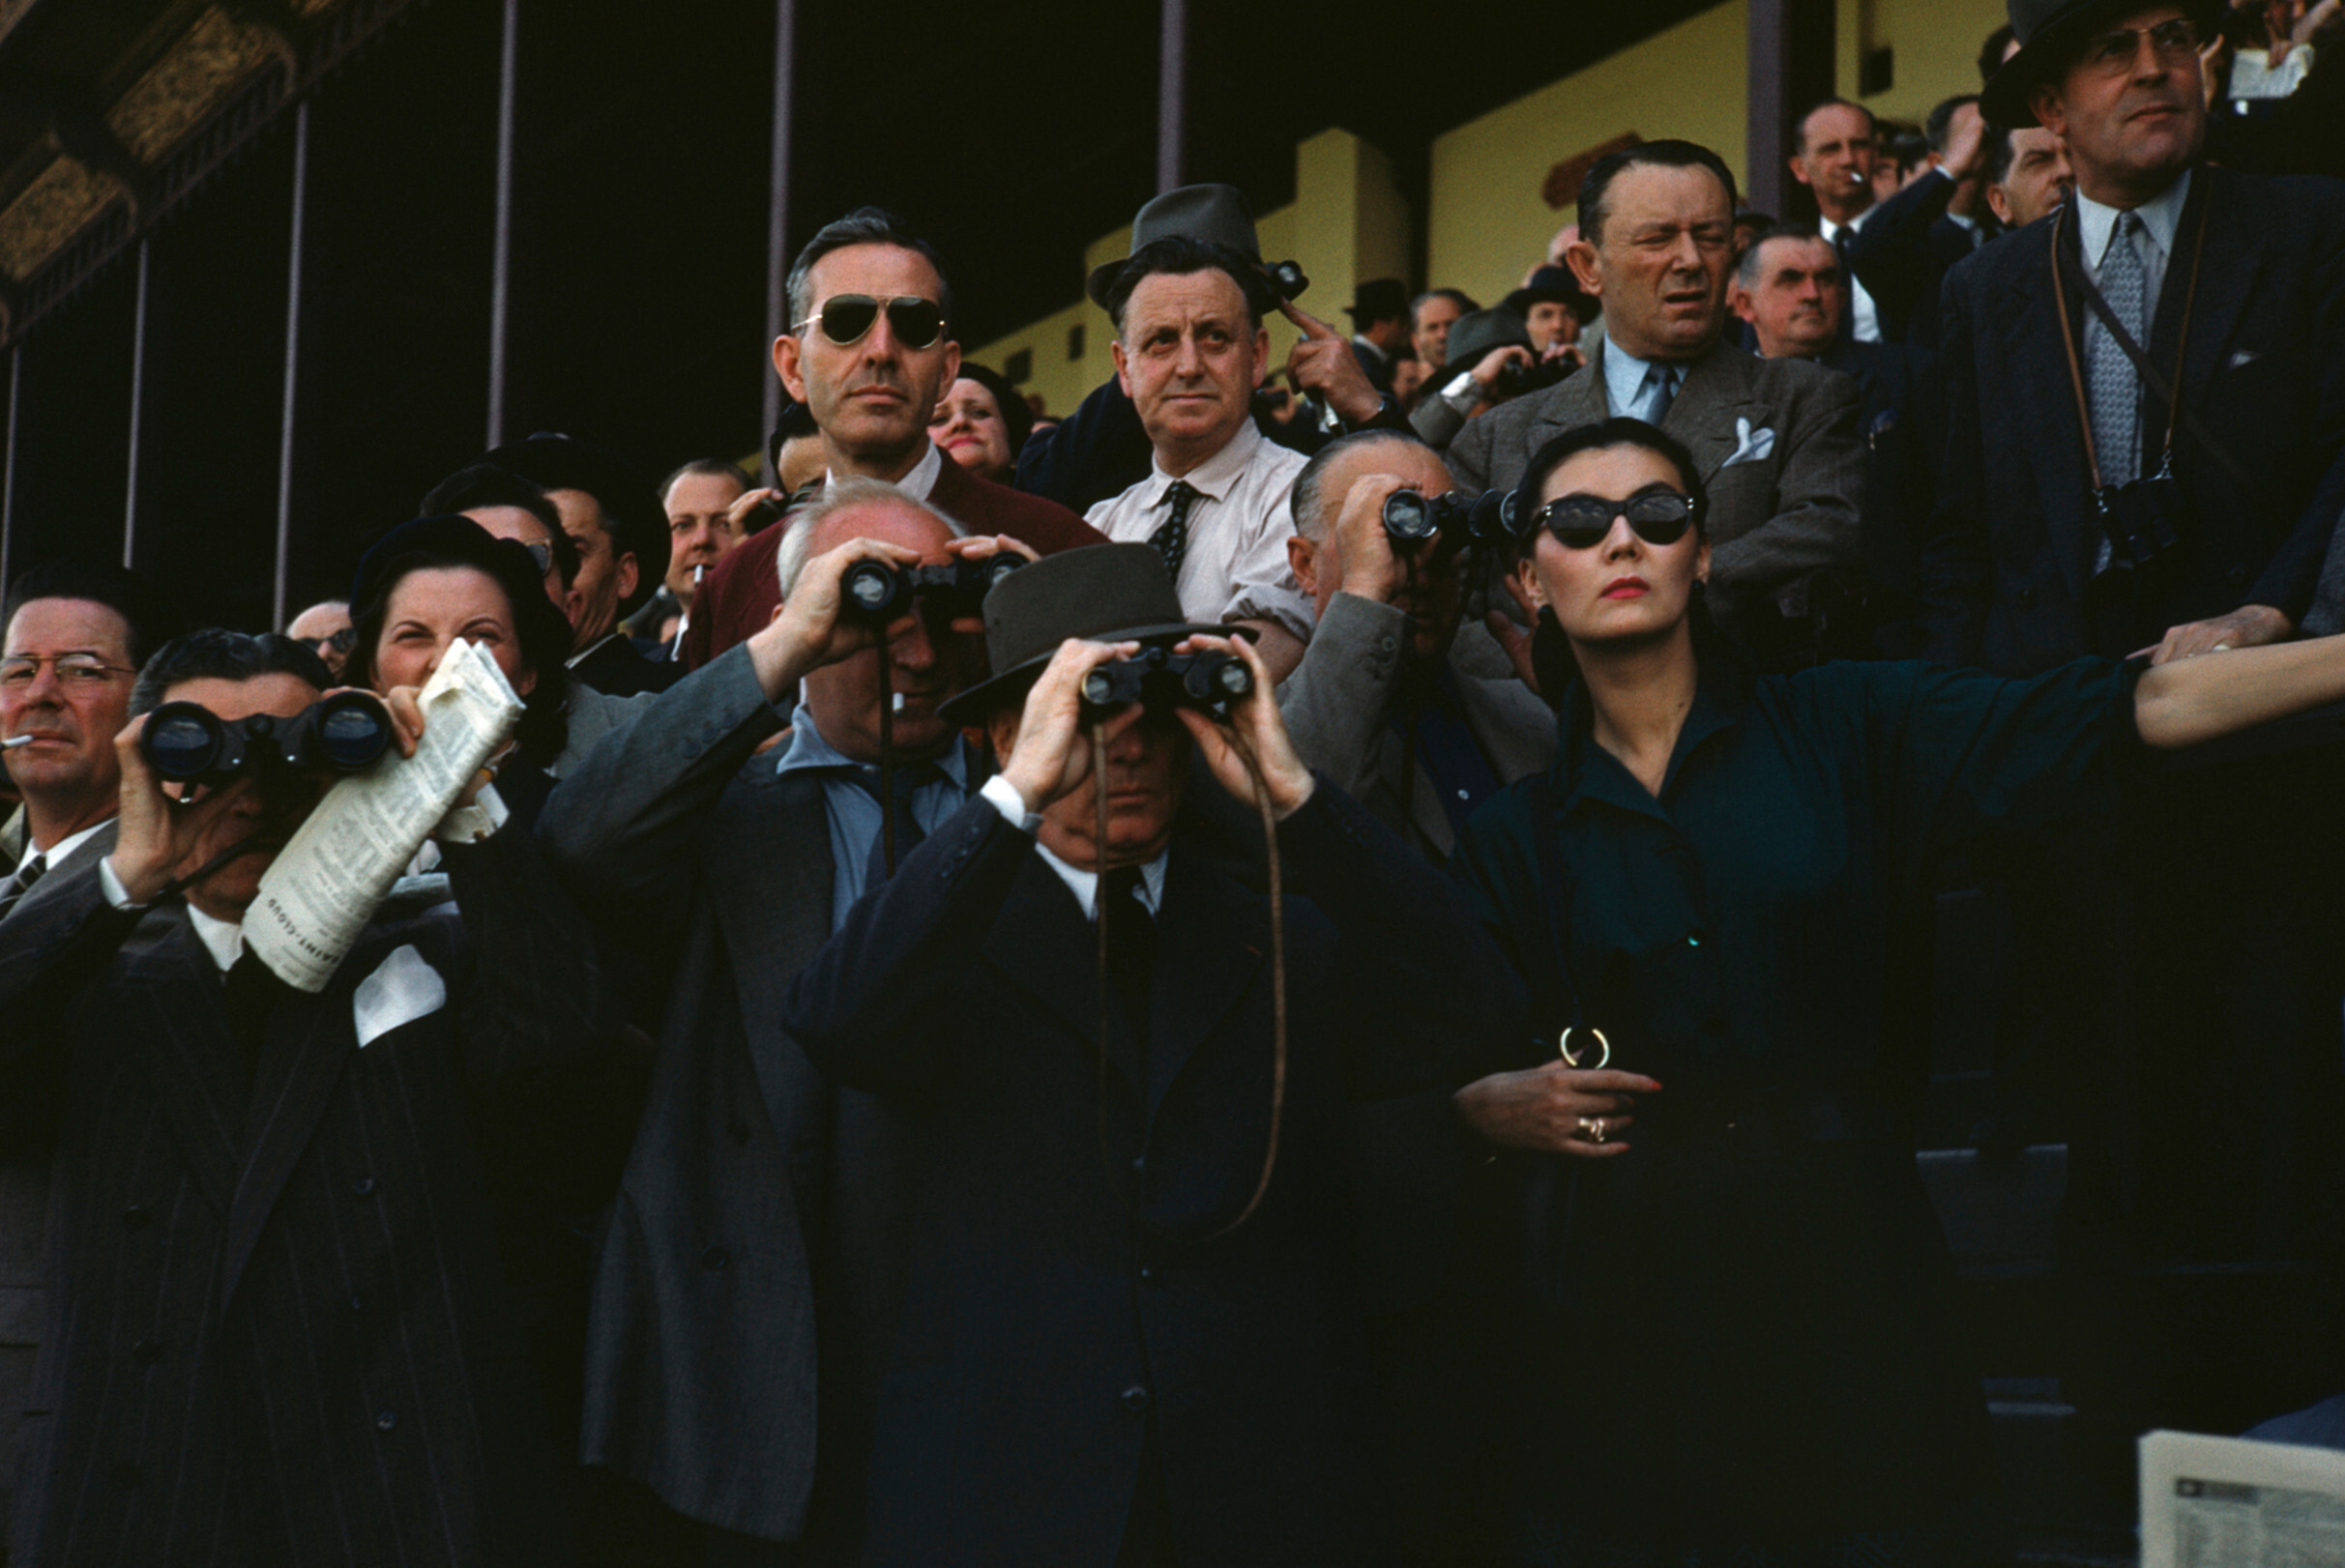 Зрители на ипподроме Лоншан, Париж, примерно 1952 год.  Фотограф Роберт Капа